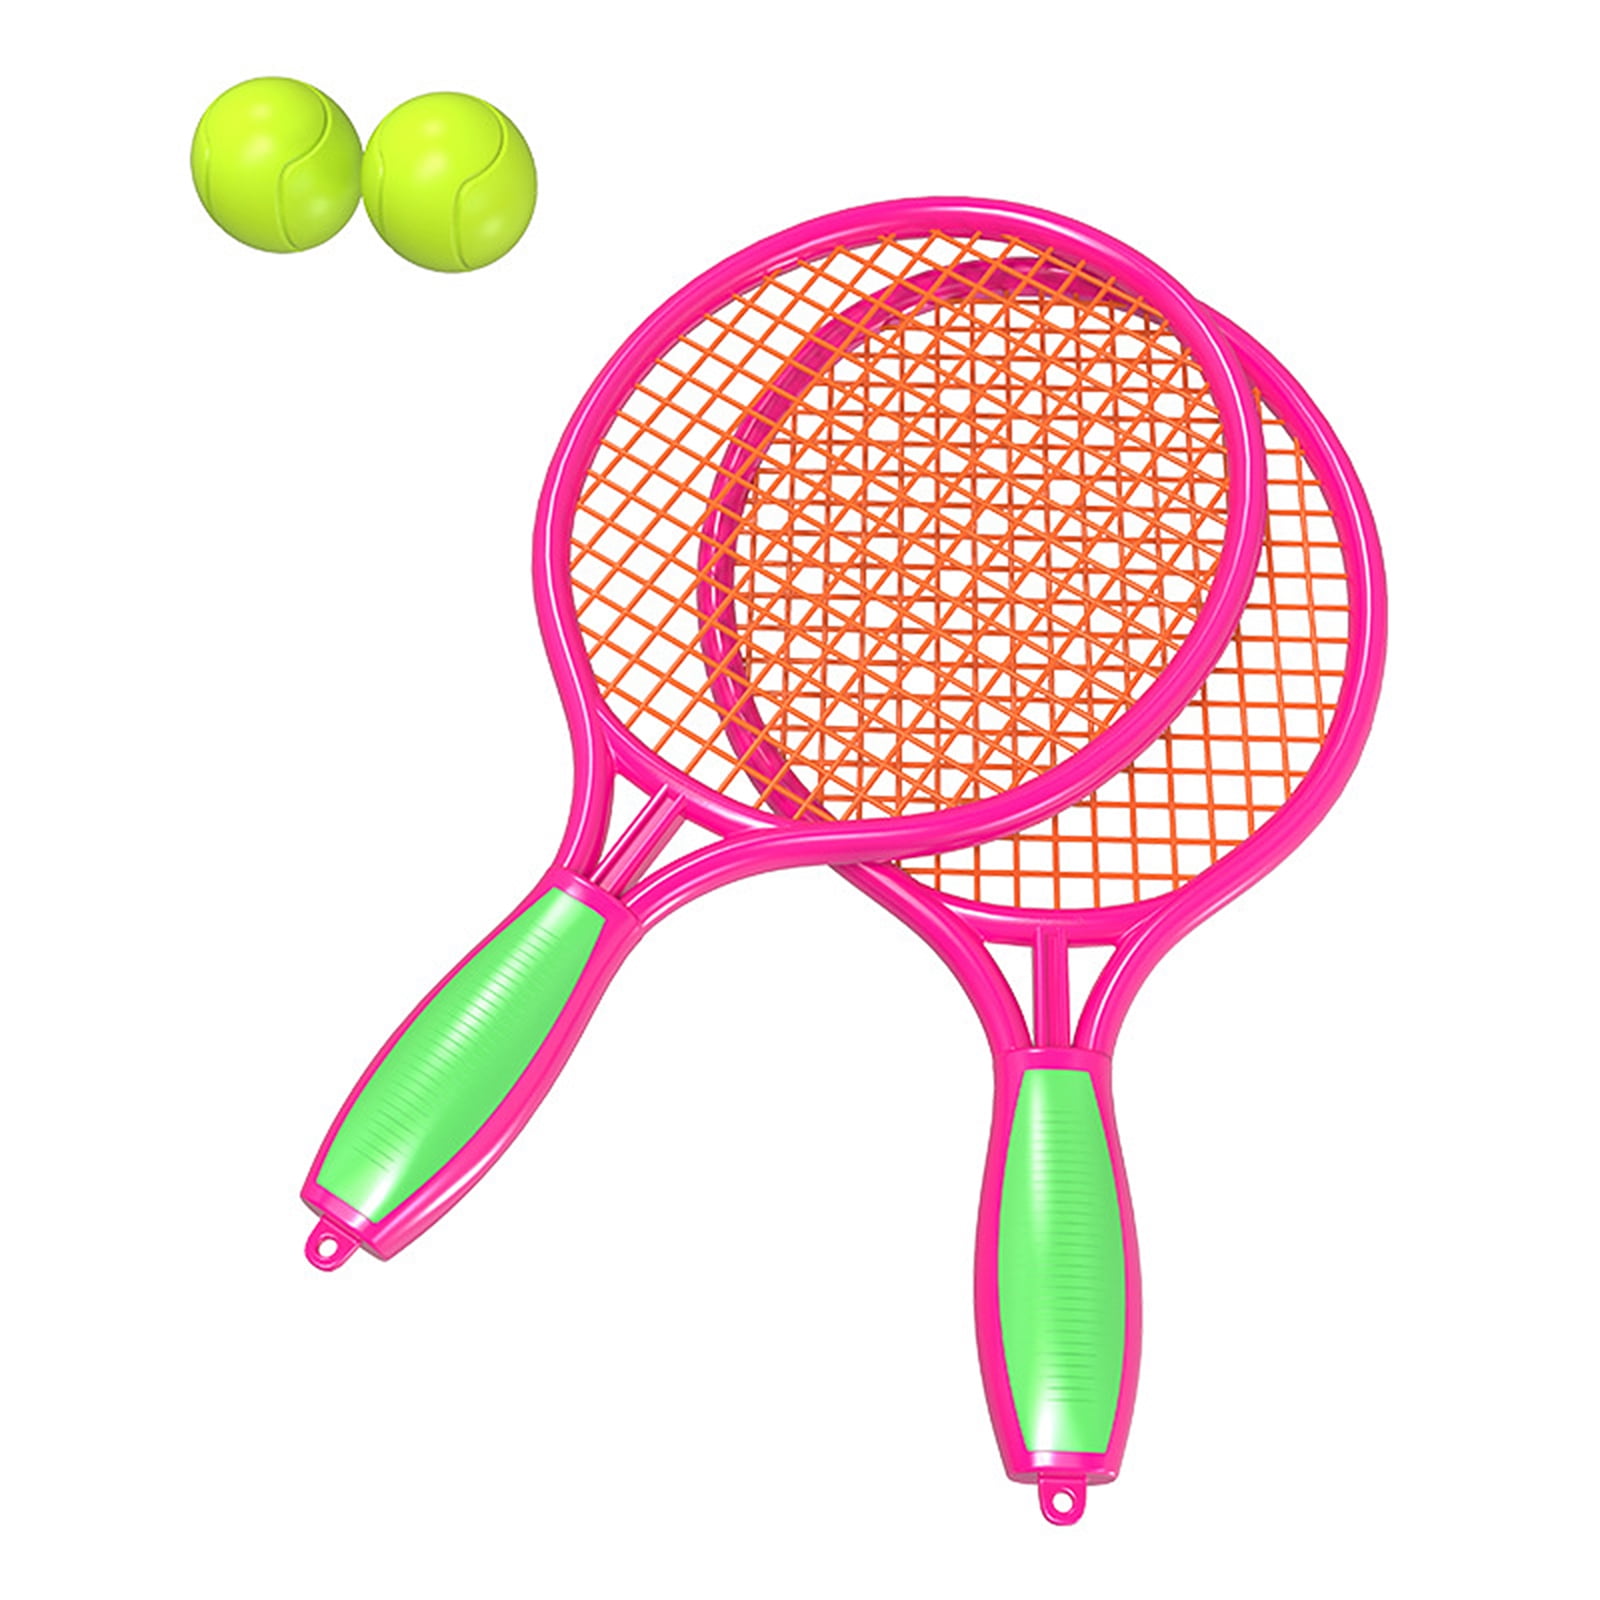 Jumbo Tennis Racket/ Badminton Set Beach Garden Outdoor Kids Sport Game Fun Toy 